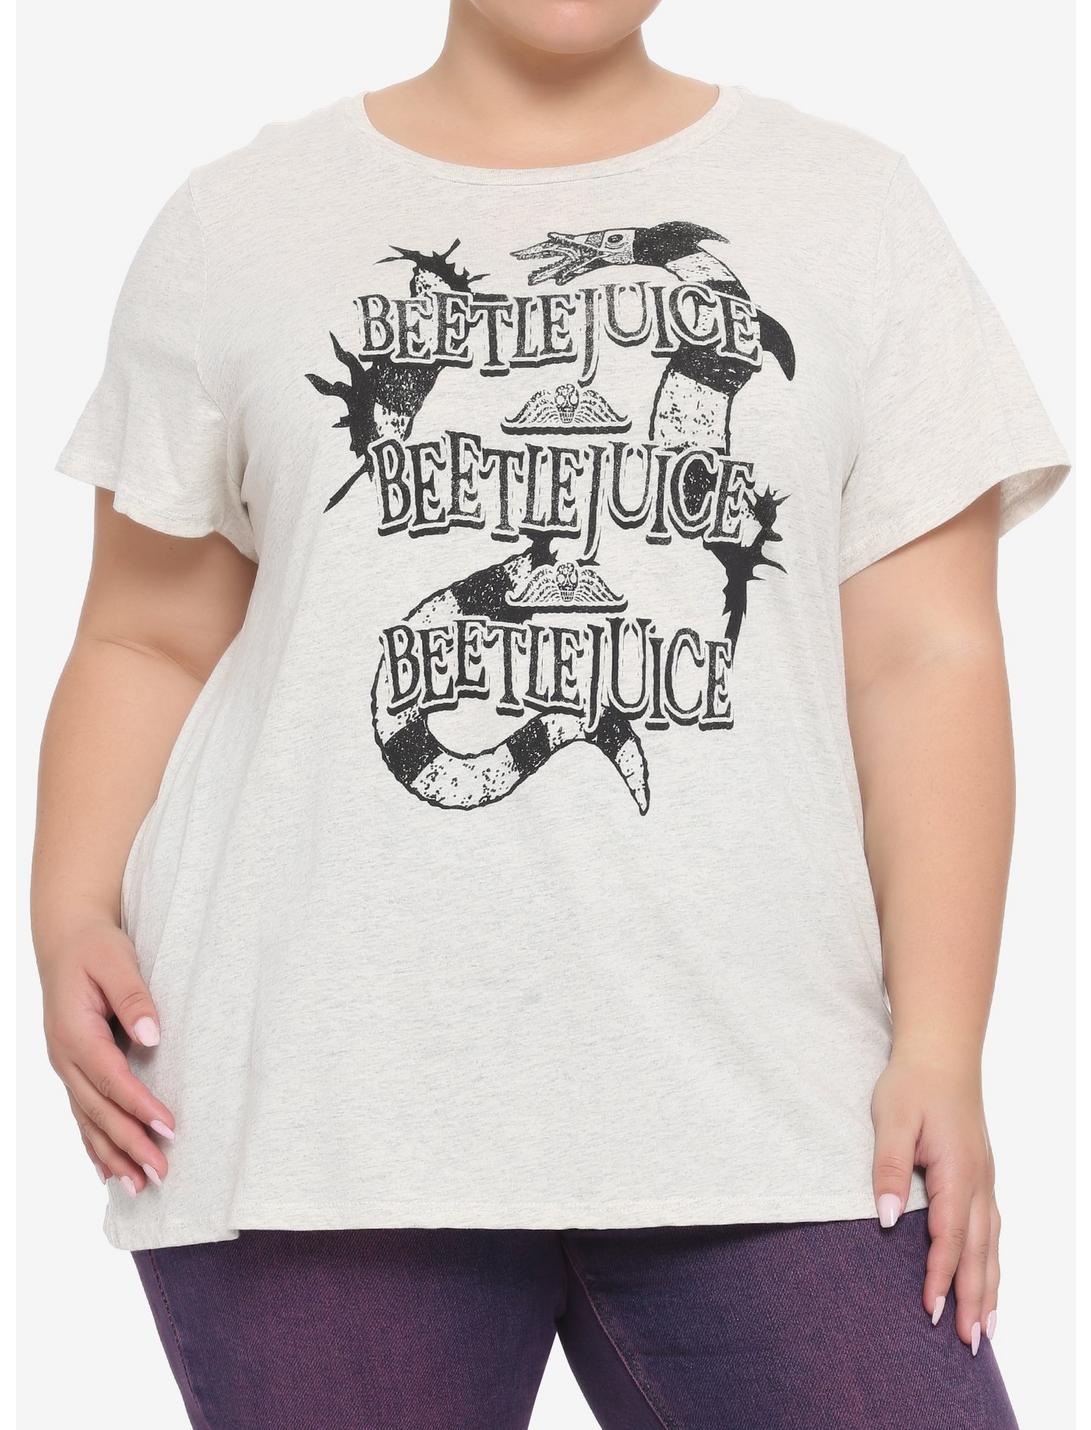 Beetlejuice Sandworm Title Repeat Boyfriend Fit Girls T-Shirt Plus Size, BLACK, hi-res